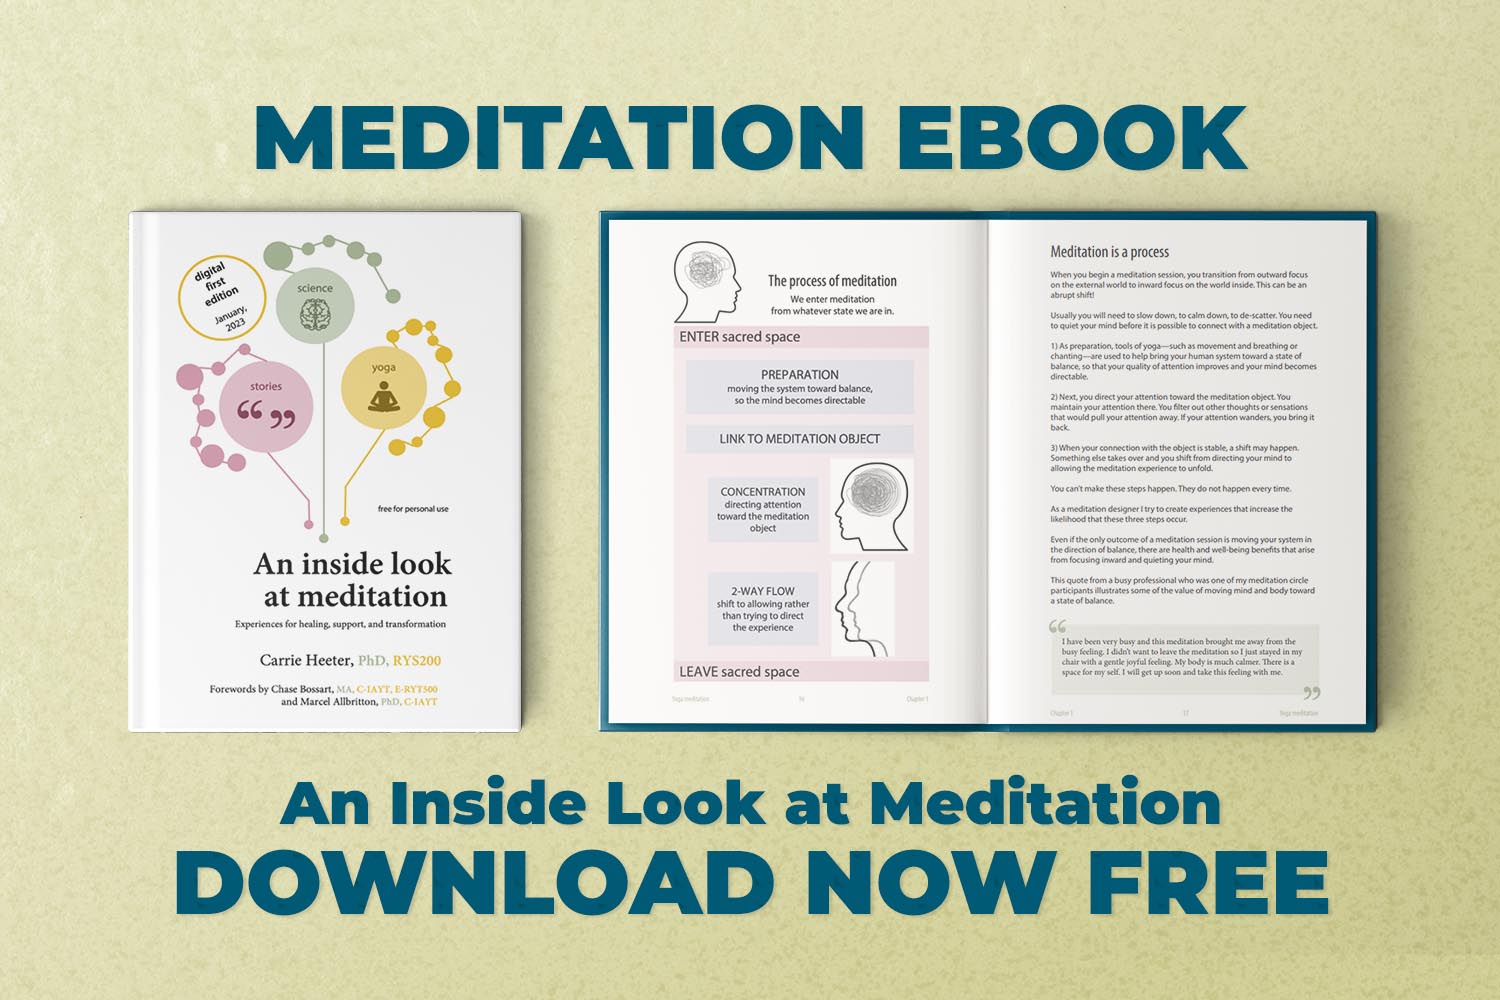 Meditation Ebook Mock Up - Download Now Free is written below it